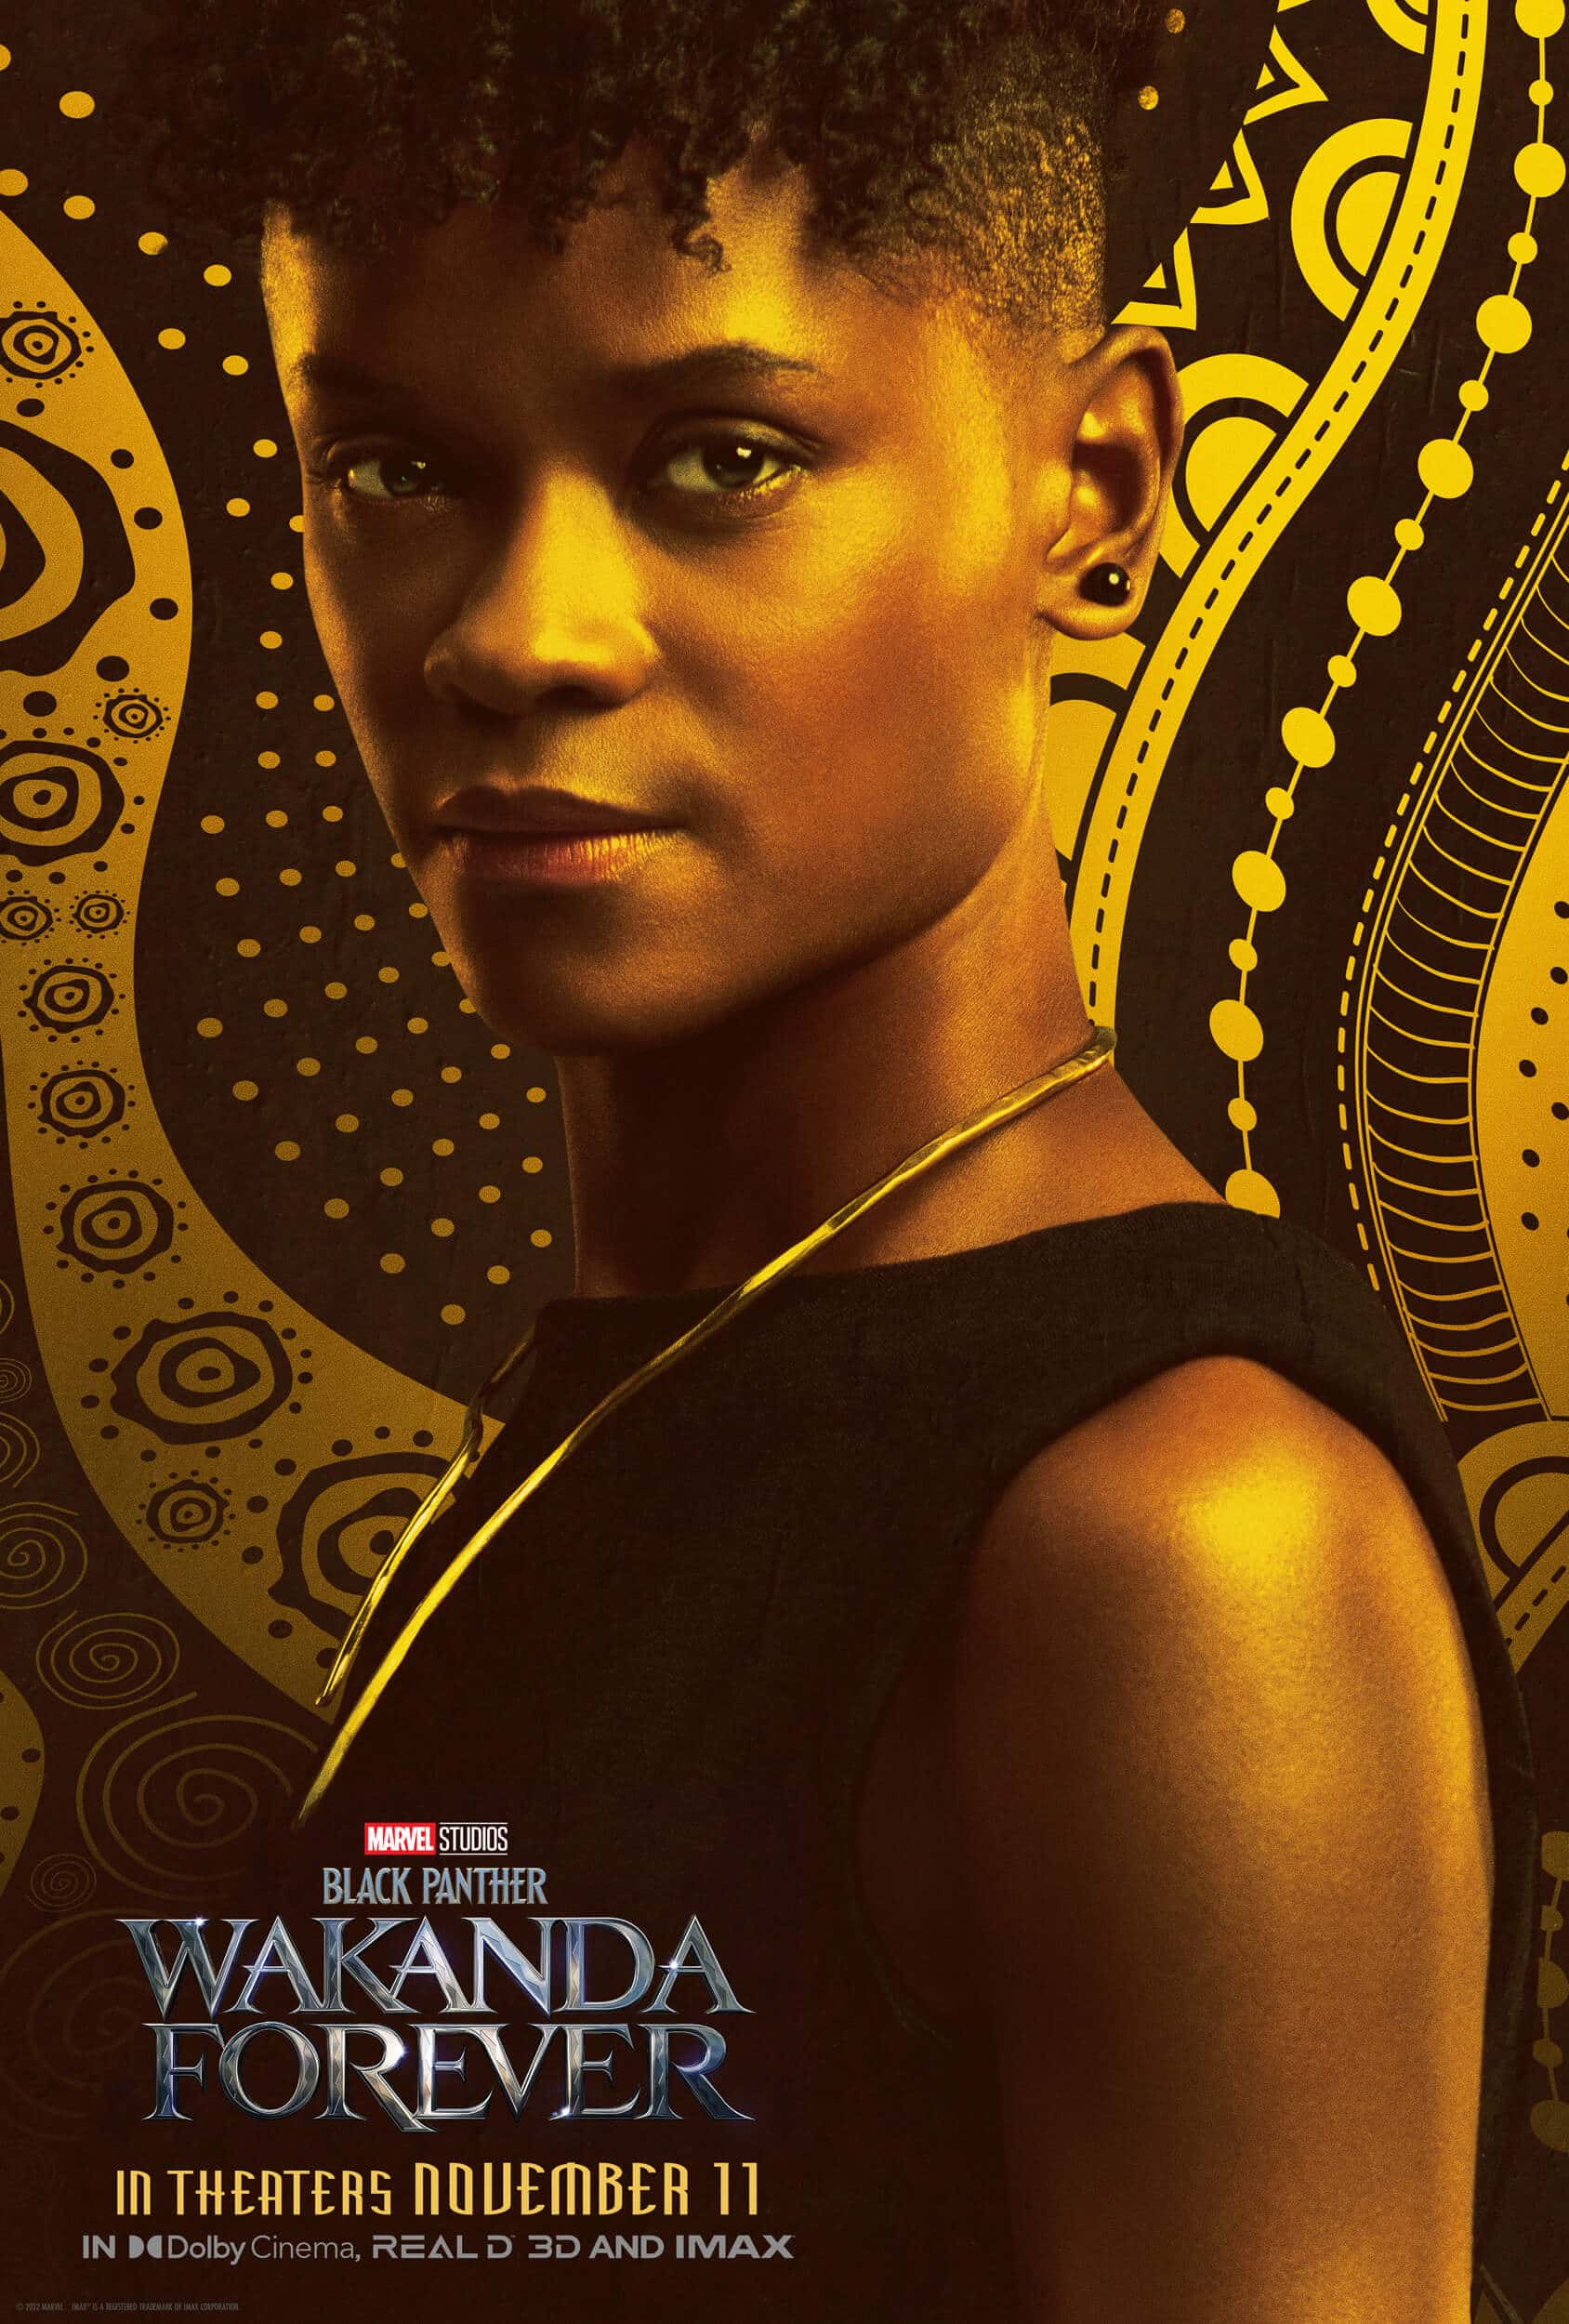 lanzamiento del nuevo tráiler y afiches de personajes de “black panther: wakanda forever”